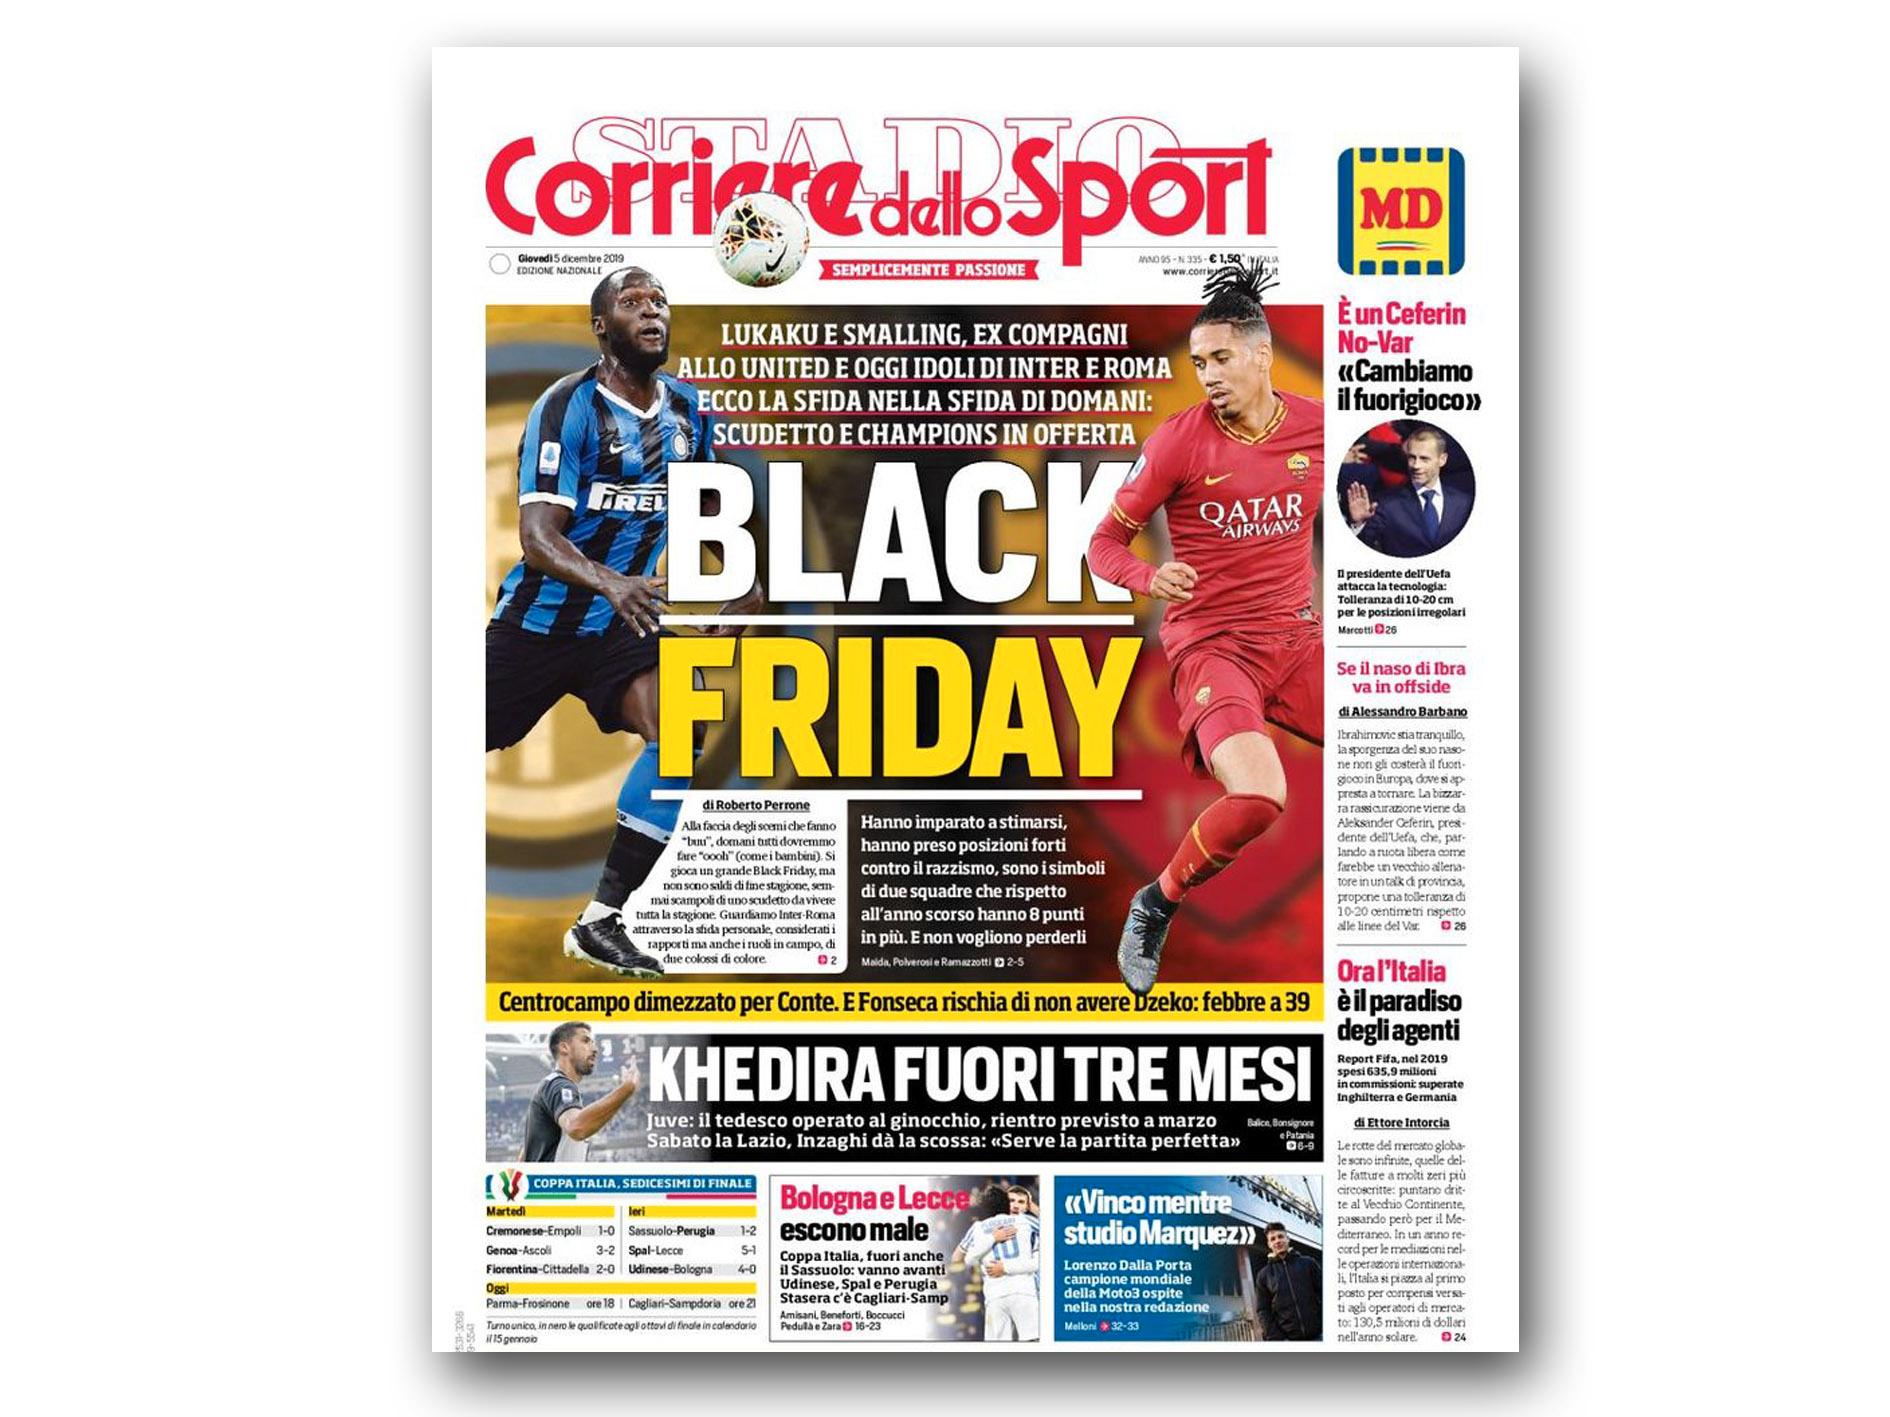 Torsdagens avisforside til Corriere dello Sport har ikke gått upåaktet hen.